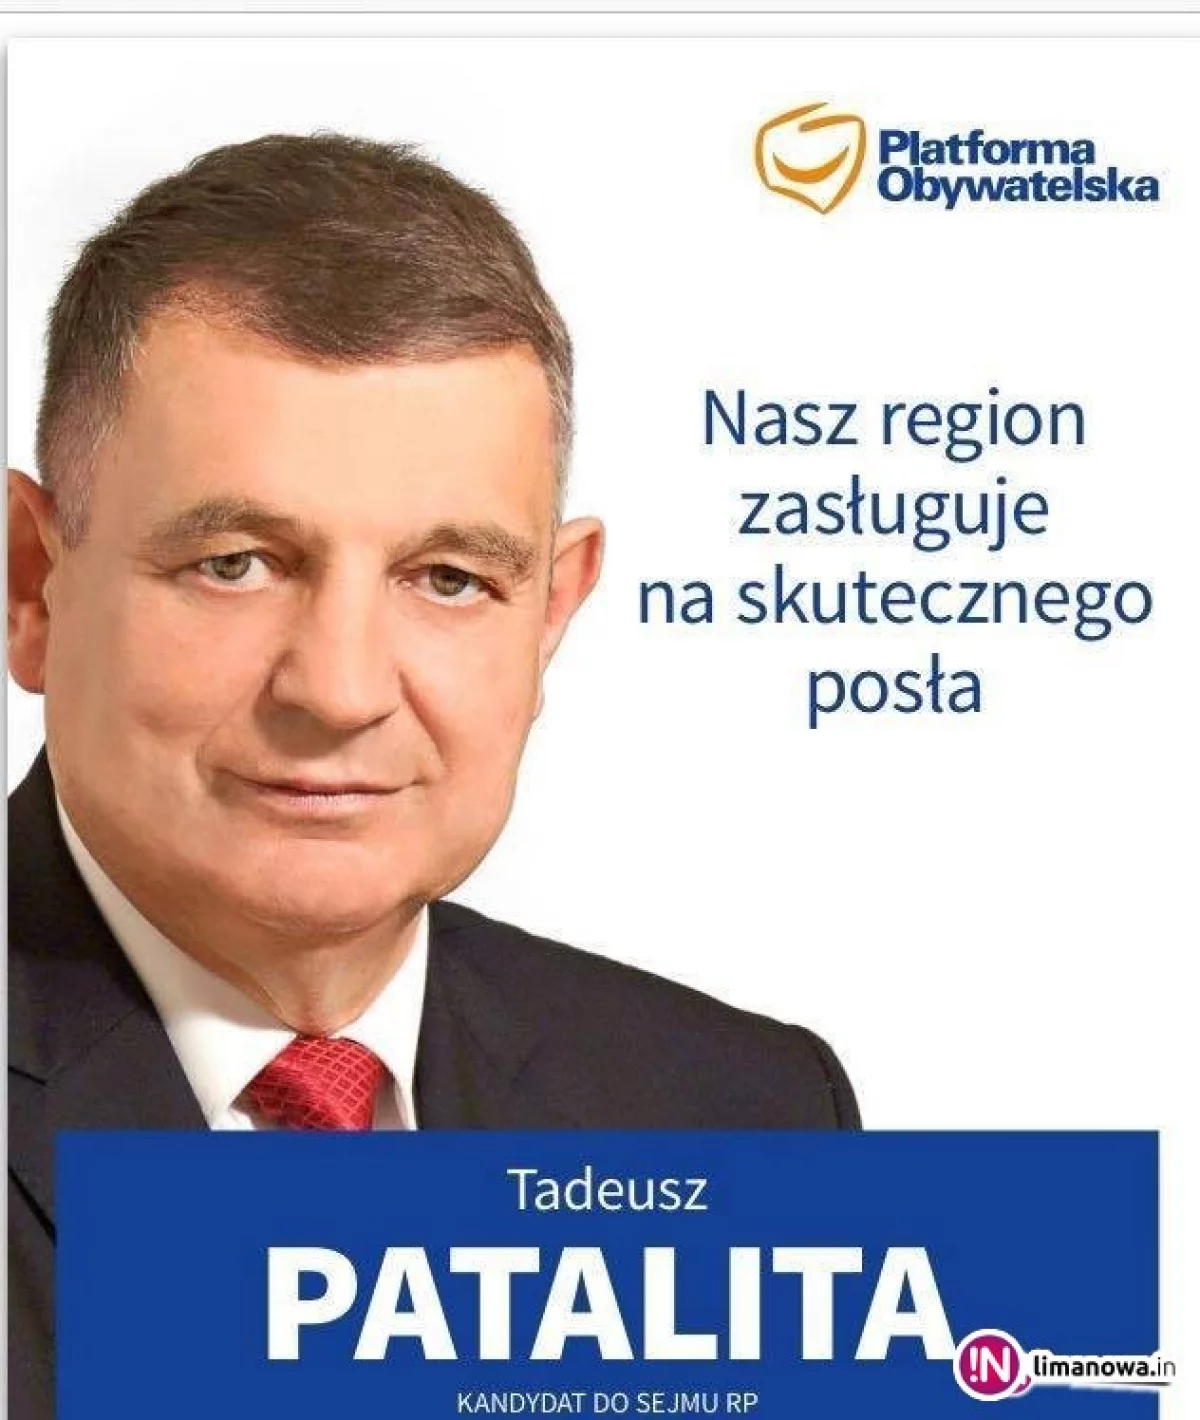 Tadeusz Patalita (PO): koalicja z każdym, kto jest zdolny do wspólnego działania